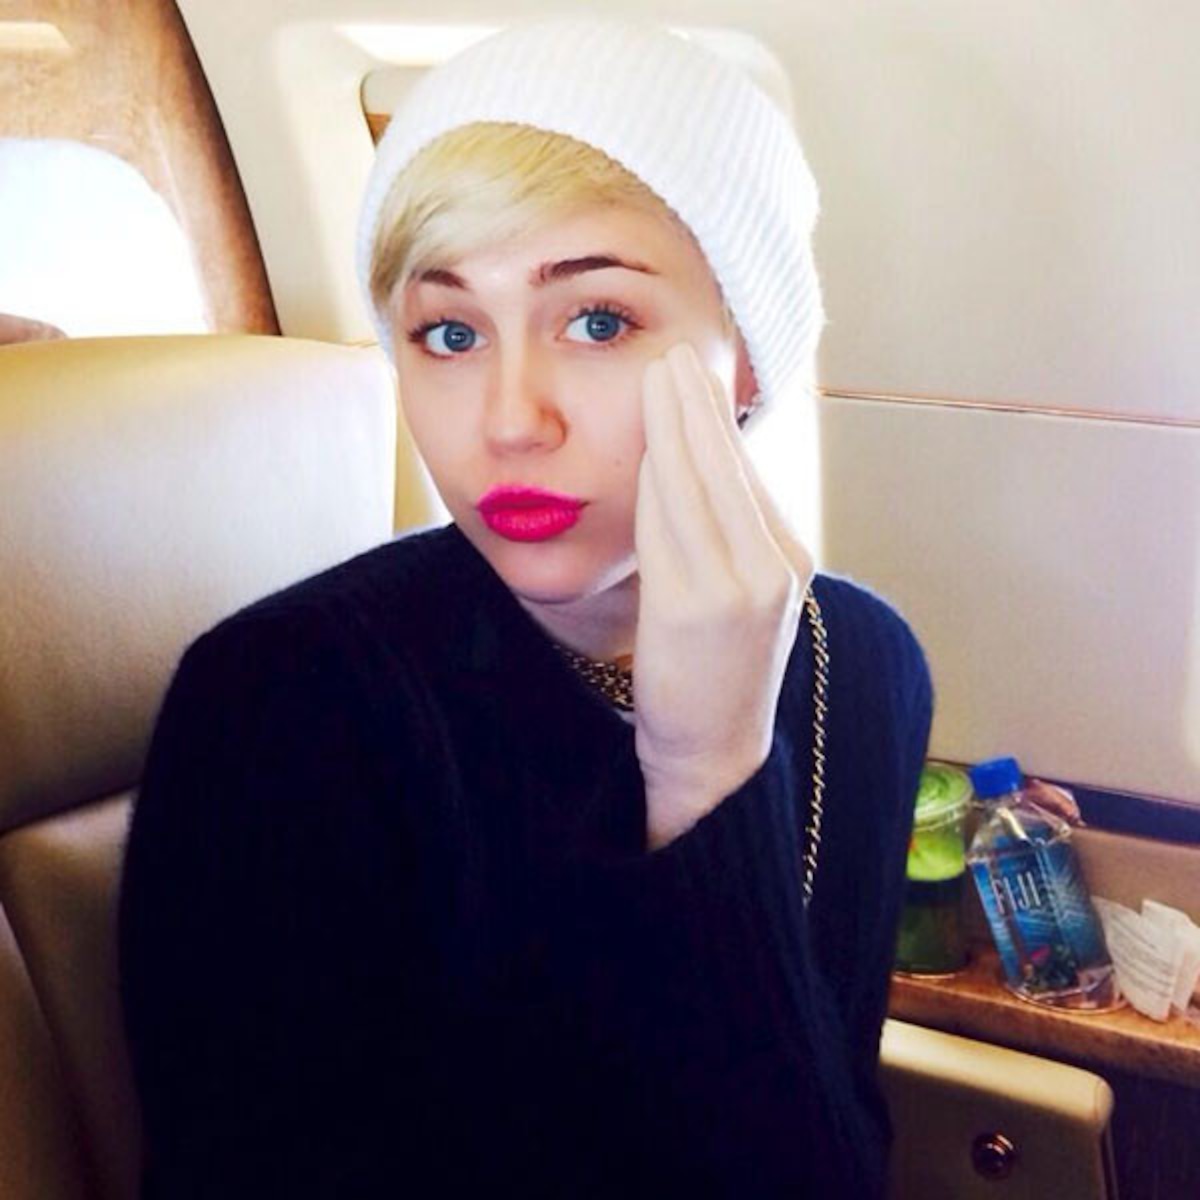 Dildo miley cyrus Miley Cyrus